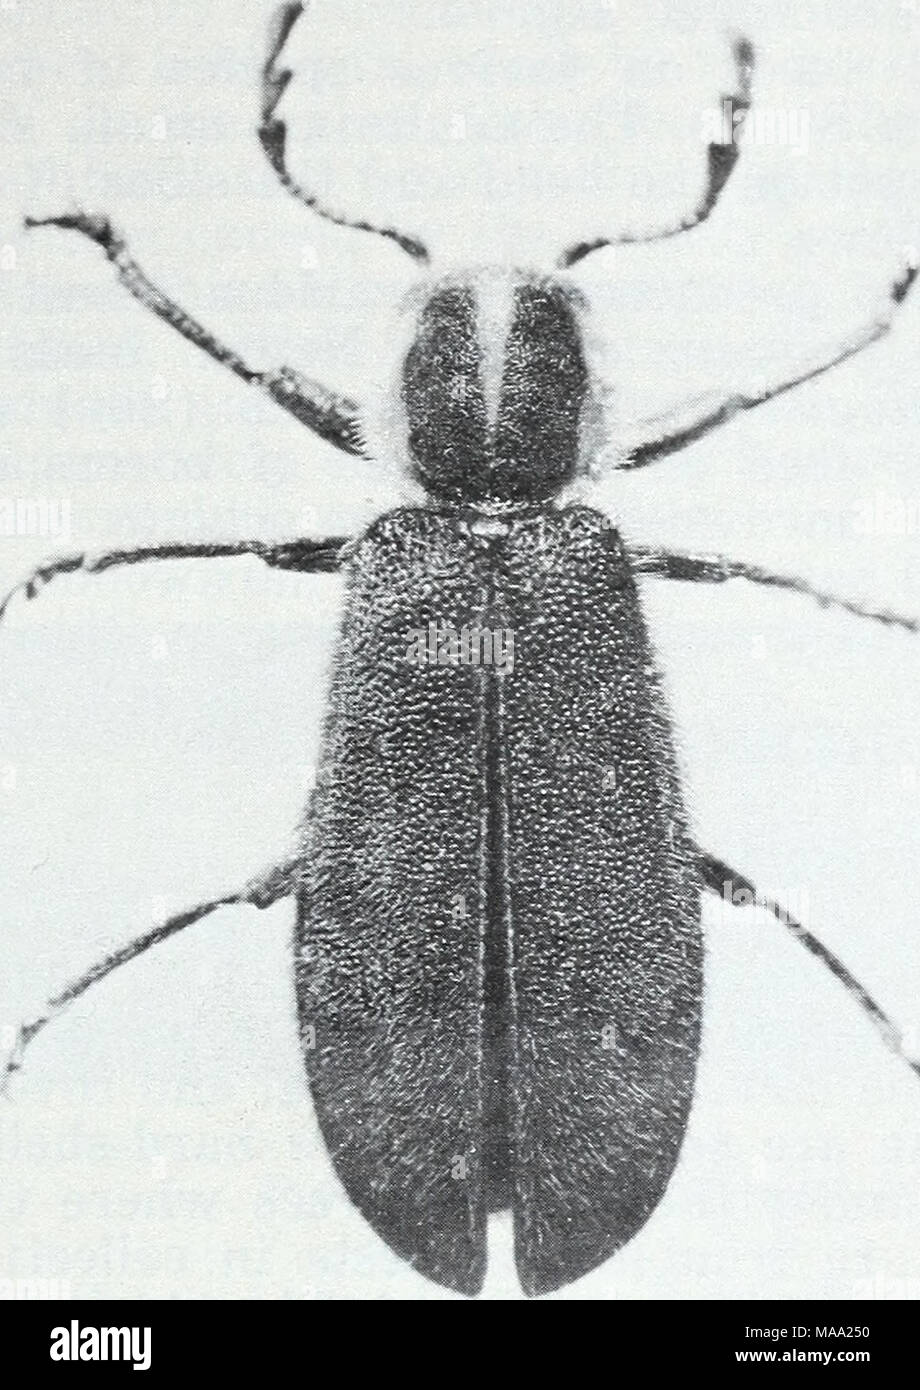 . Les insectes des forêts de l'Est . F-519949 Figure 45.-adulte d'essa- Chari pilosa, un prédateur des larves de bois. Enoclerus nigripes (disons) les larves se nourrissent de scolytes dans le coni- fers, et sur le bois des feuillus, des foreurs. Les adultes sont des col- ored et environ 8 à 12 mm. de long. La tête, le thorax, base de l'aile et le dessous est rouge terne ; le reste est noir à l'exception de deux barres transversales jaunâtres sur l'aile. Les larves sont similaires à ceux de Thanasimus dubins. Le ventre noir- clerid E. lecontei Wolc, a beaucoup d'hôtes y compris les scolytes et les charançons dans les pins, épinettes, et Juniper Banque D'Images